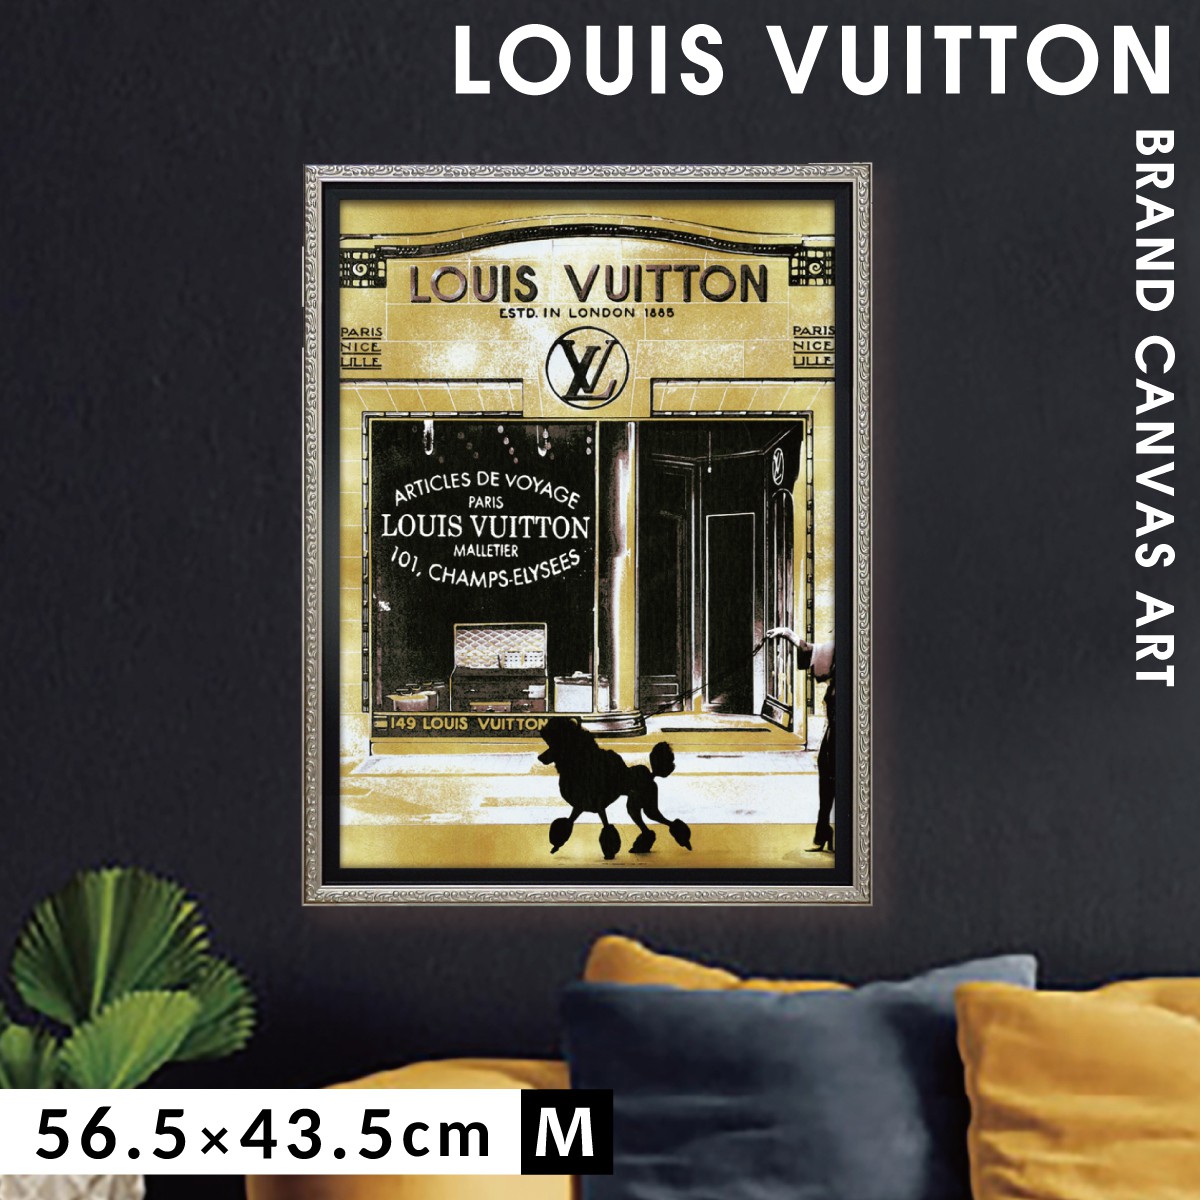 アートパネル ブランド ルイヴィトン LOUIS VUITTON オマージュ キャンバスアート フレーム付き パリストロール2 Mサイズ マドレーヌ ブレイク 人気大割引